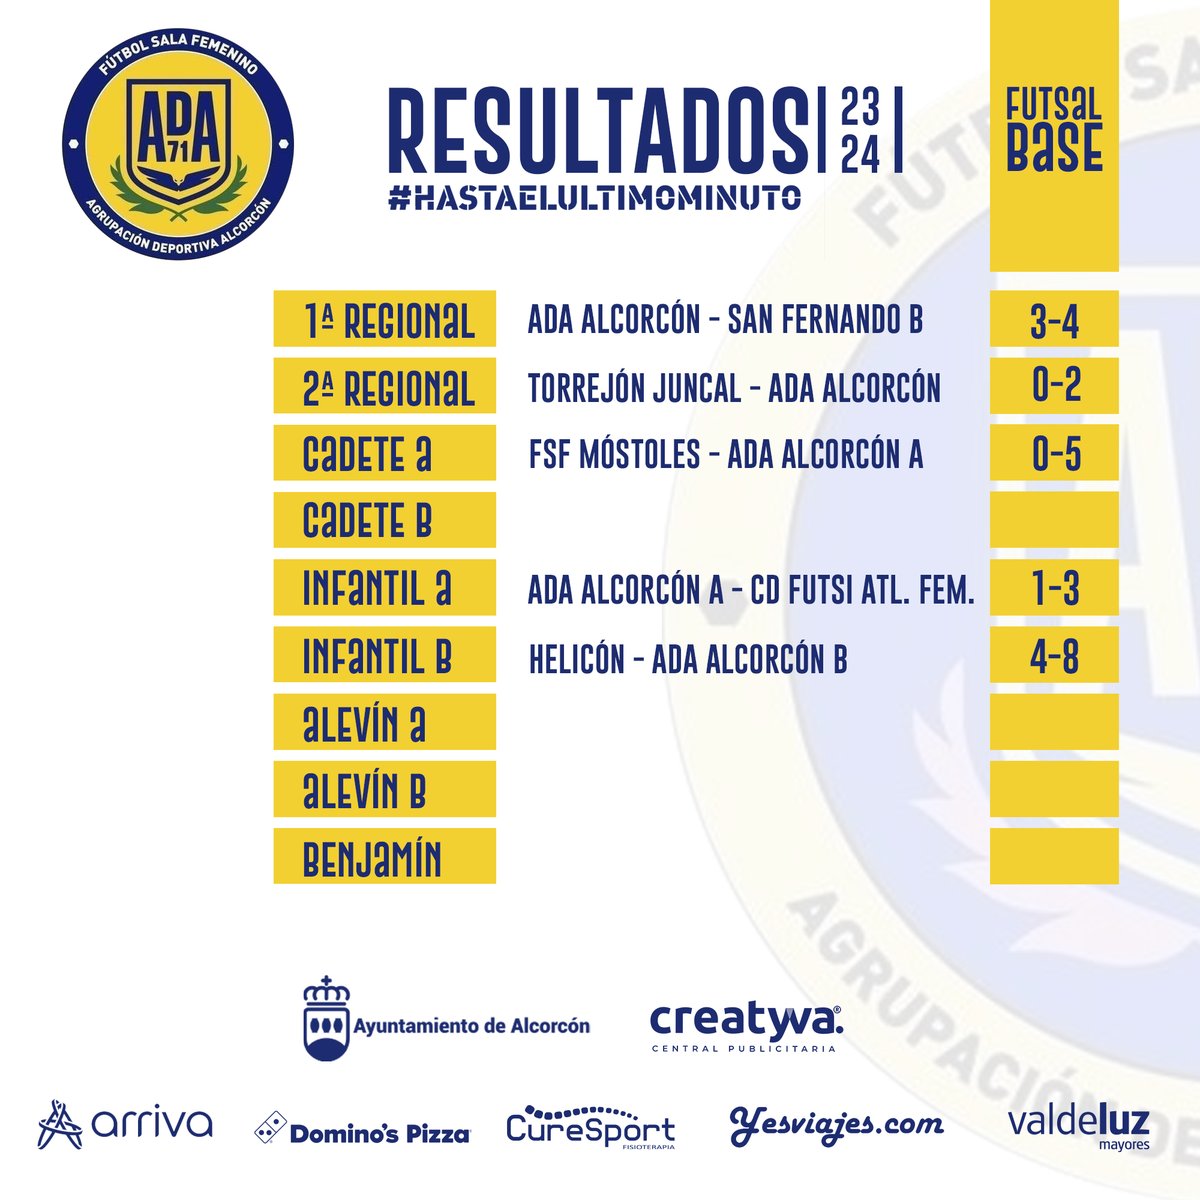 Resultados de los equipos de fútbol sala base femenino del pasado fin de semana. #NuestrasGuerreras #FutsalFemenino #FútbolSalaBase #HastaElÚltimoMinuto